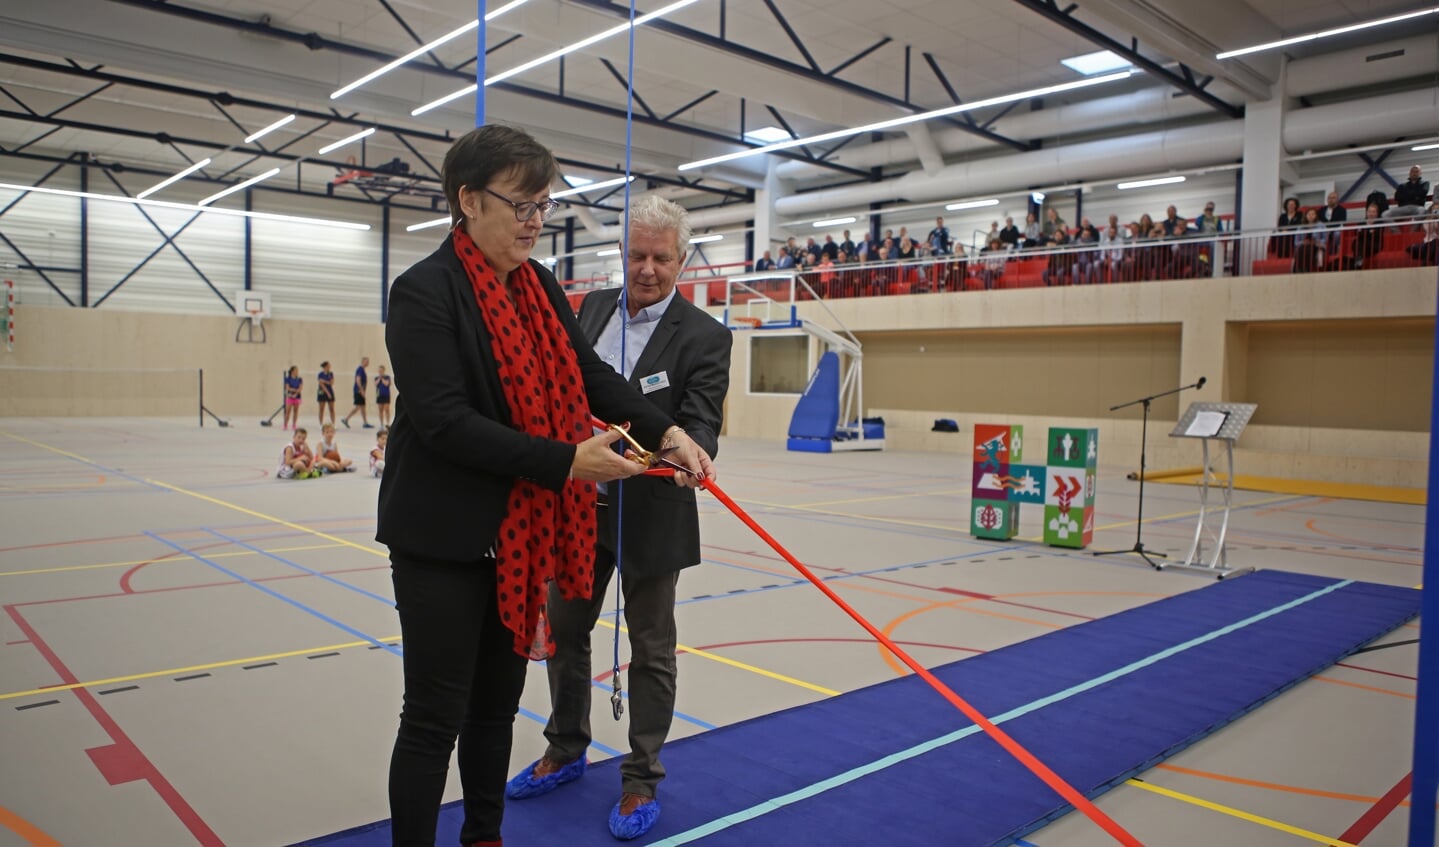 Wethouder Mieke Booij opent de vernieuwde sporthal met het doorknippen van een lint. 